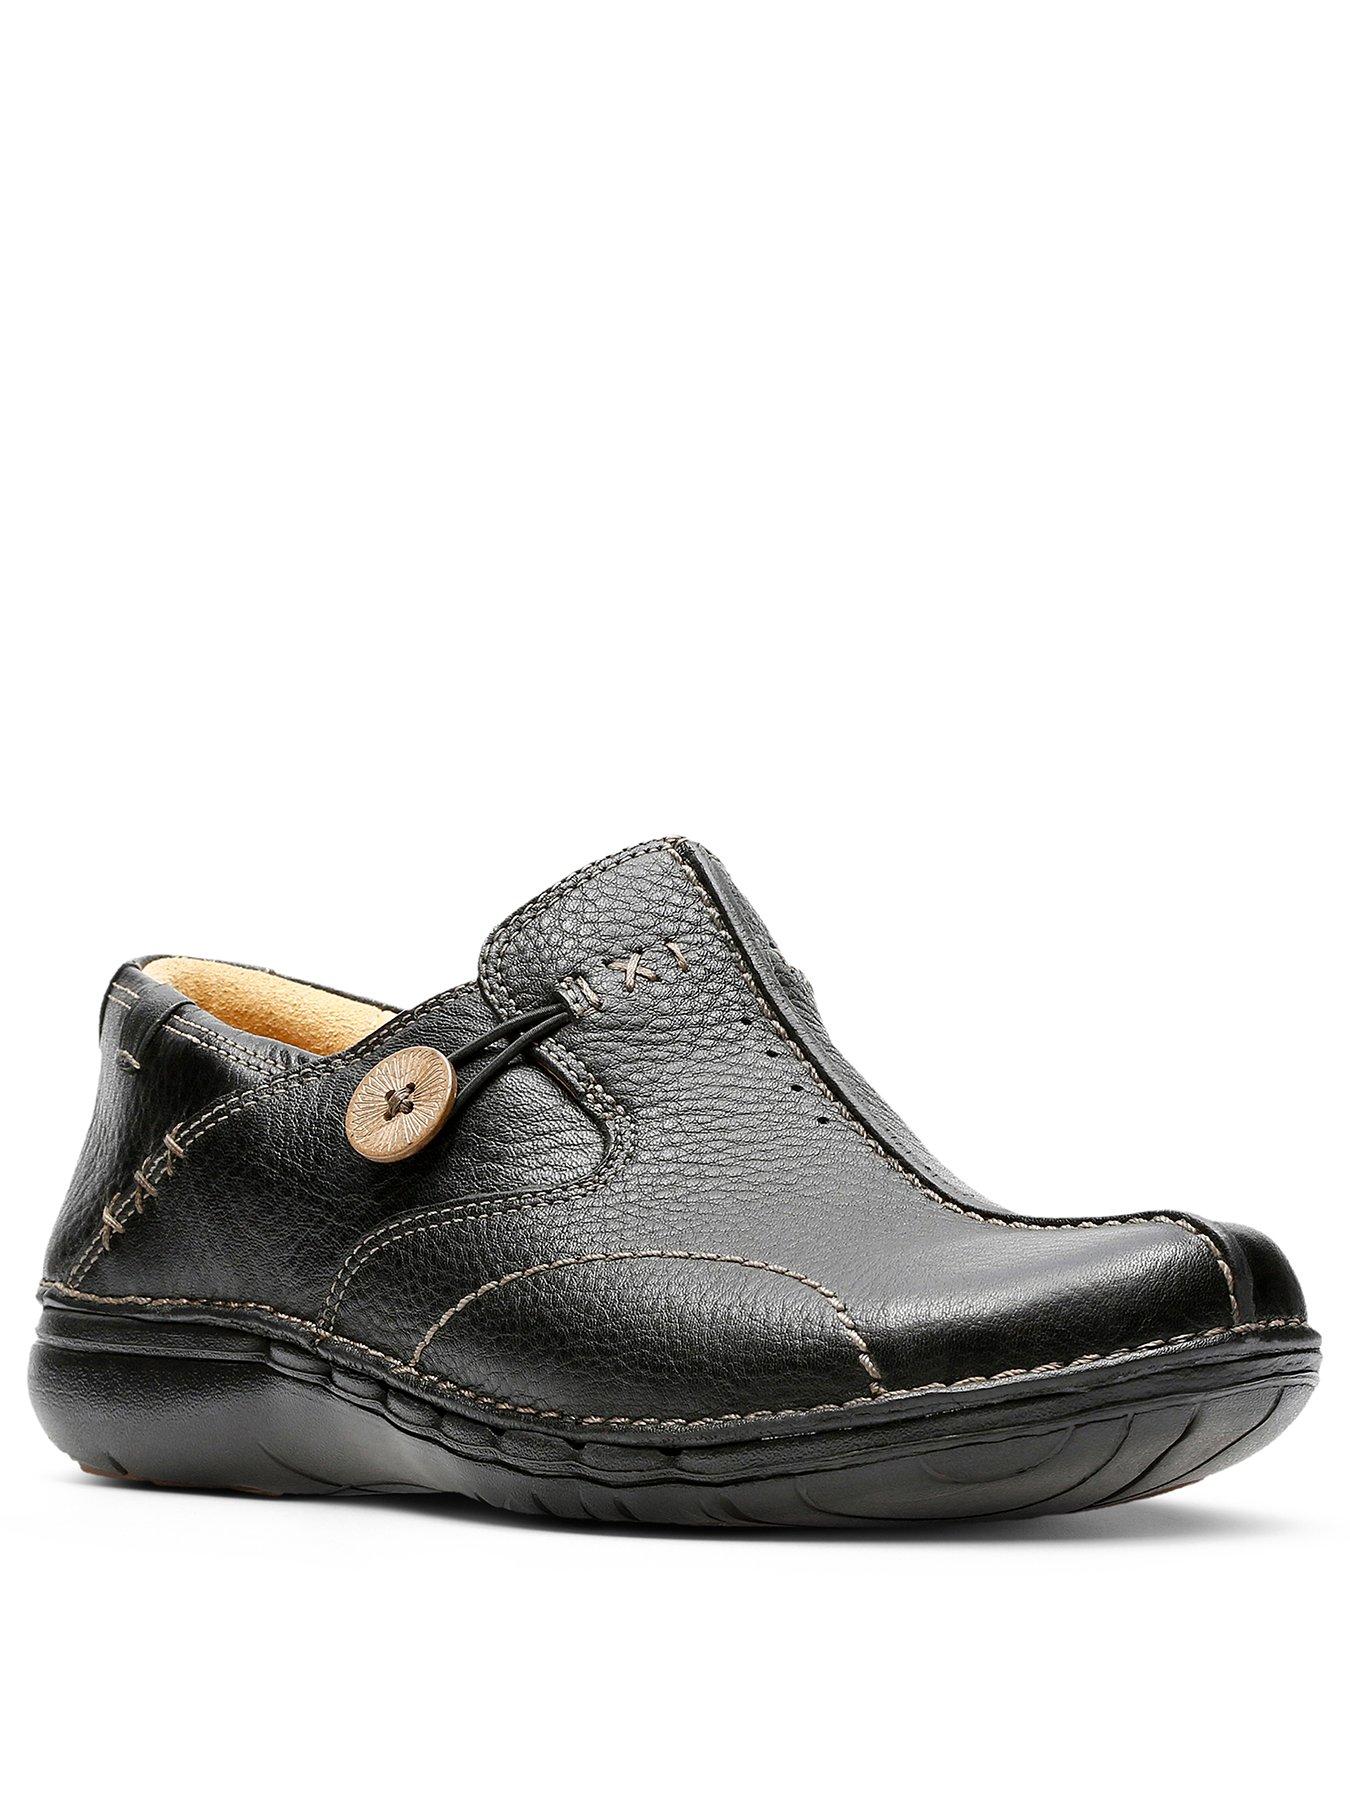 Details about   Clarks "Un Loop" Black Leather Shoes Sizes UK 3-9 